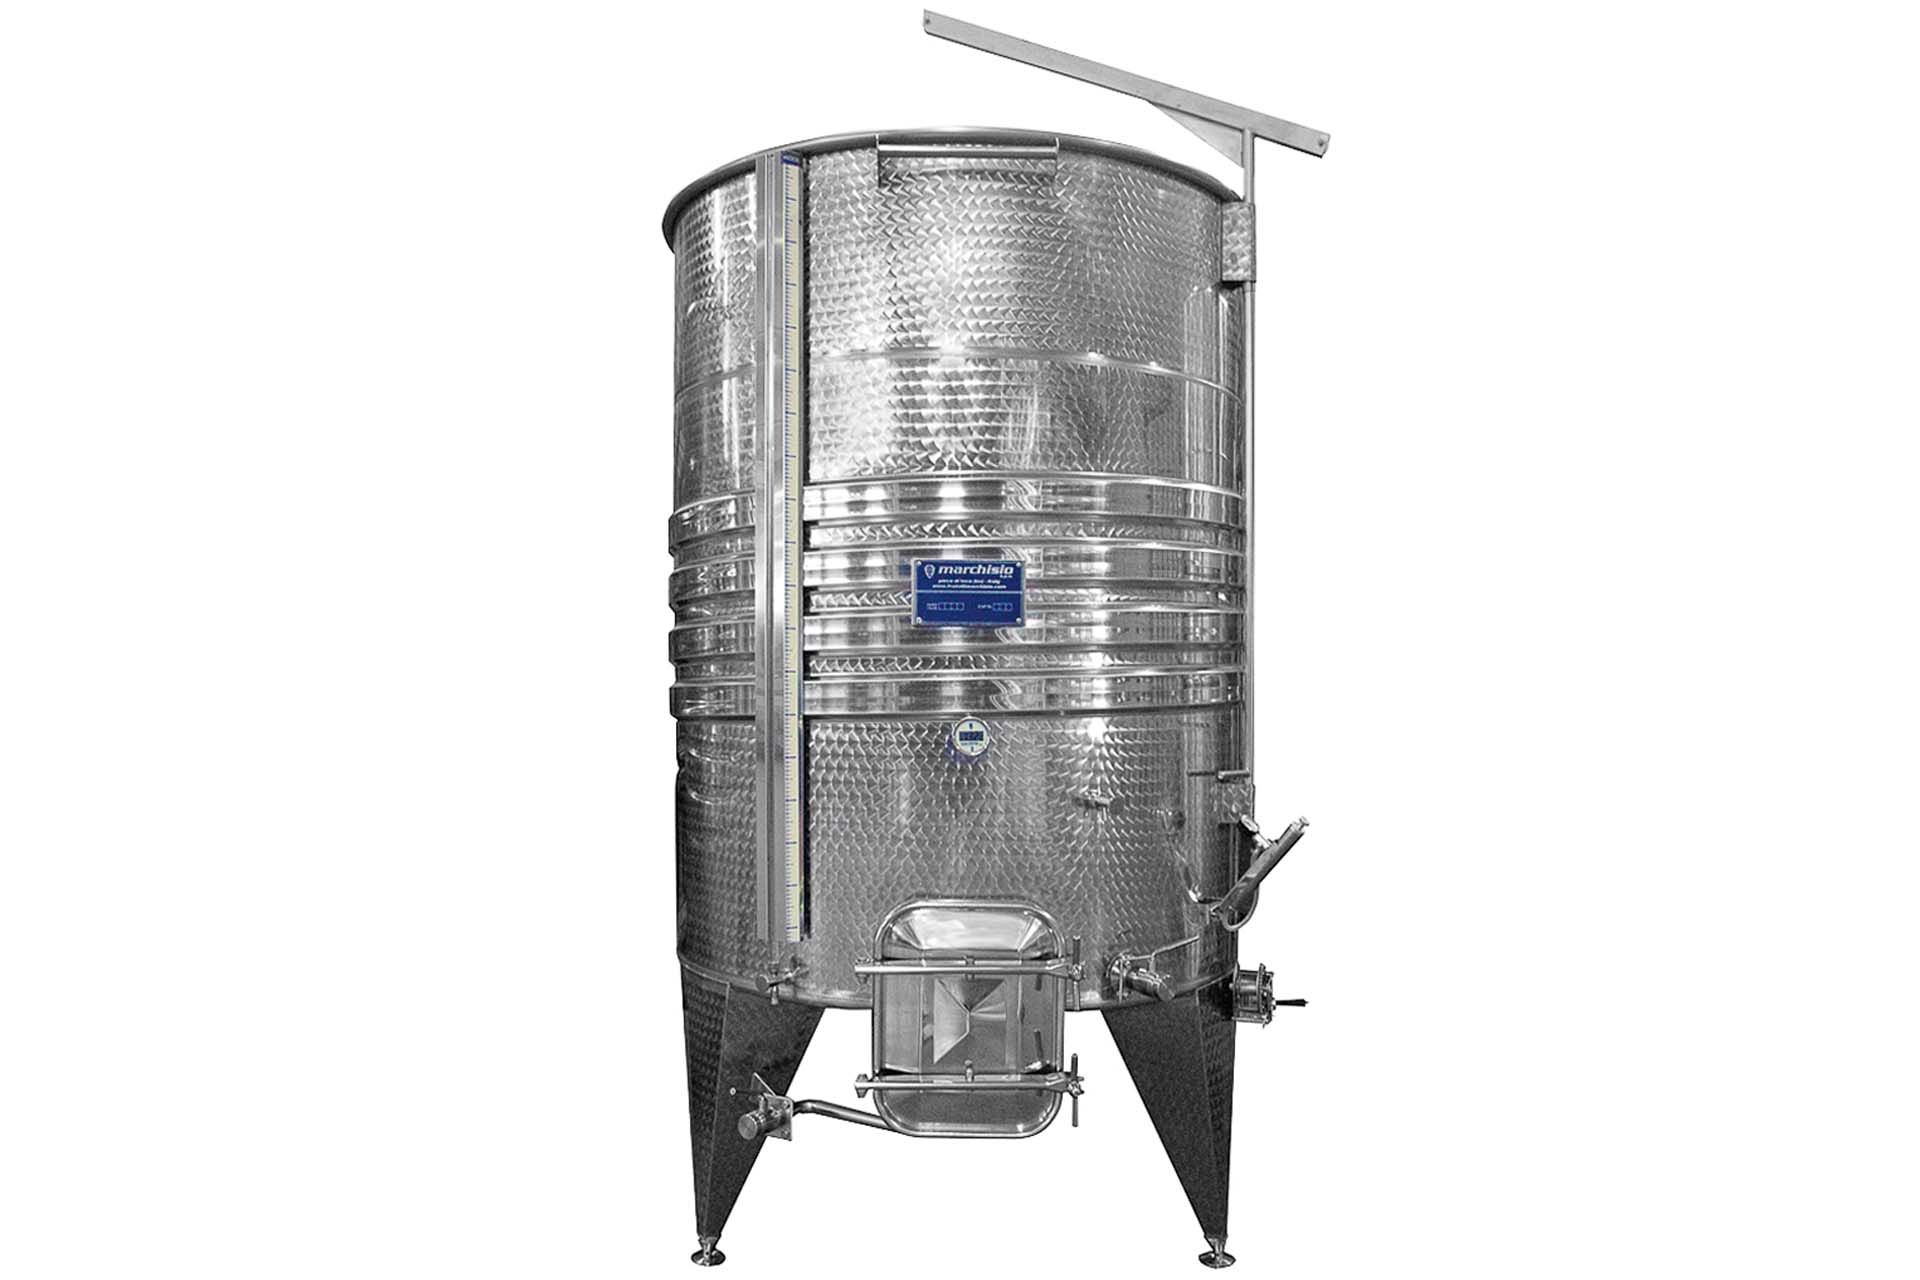 Pompes Liverani - Clapasud, Matériel de vinification et emballage viticole